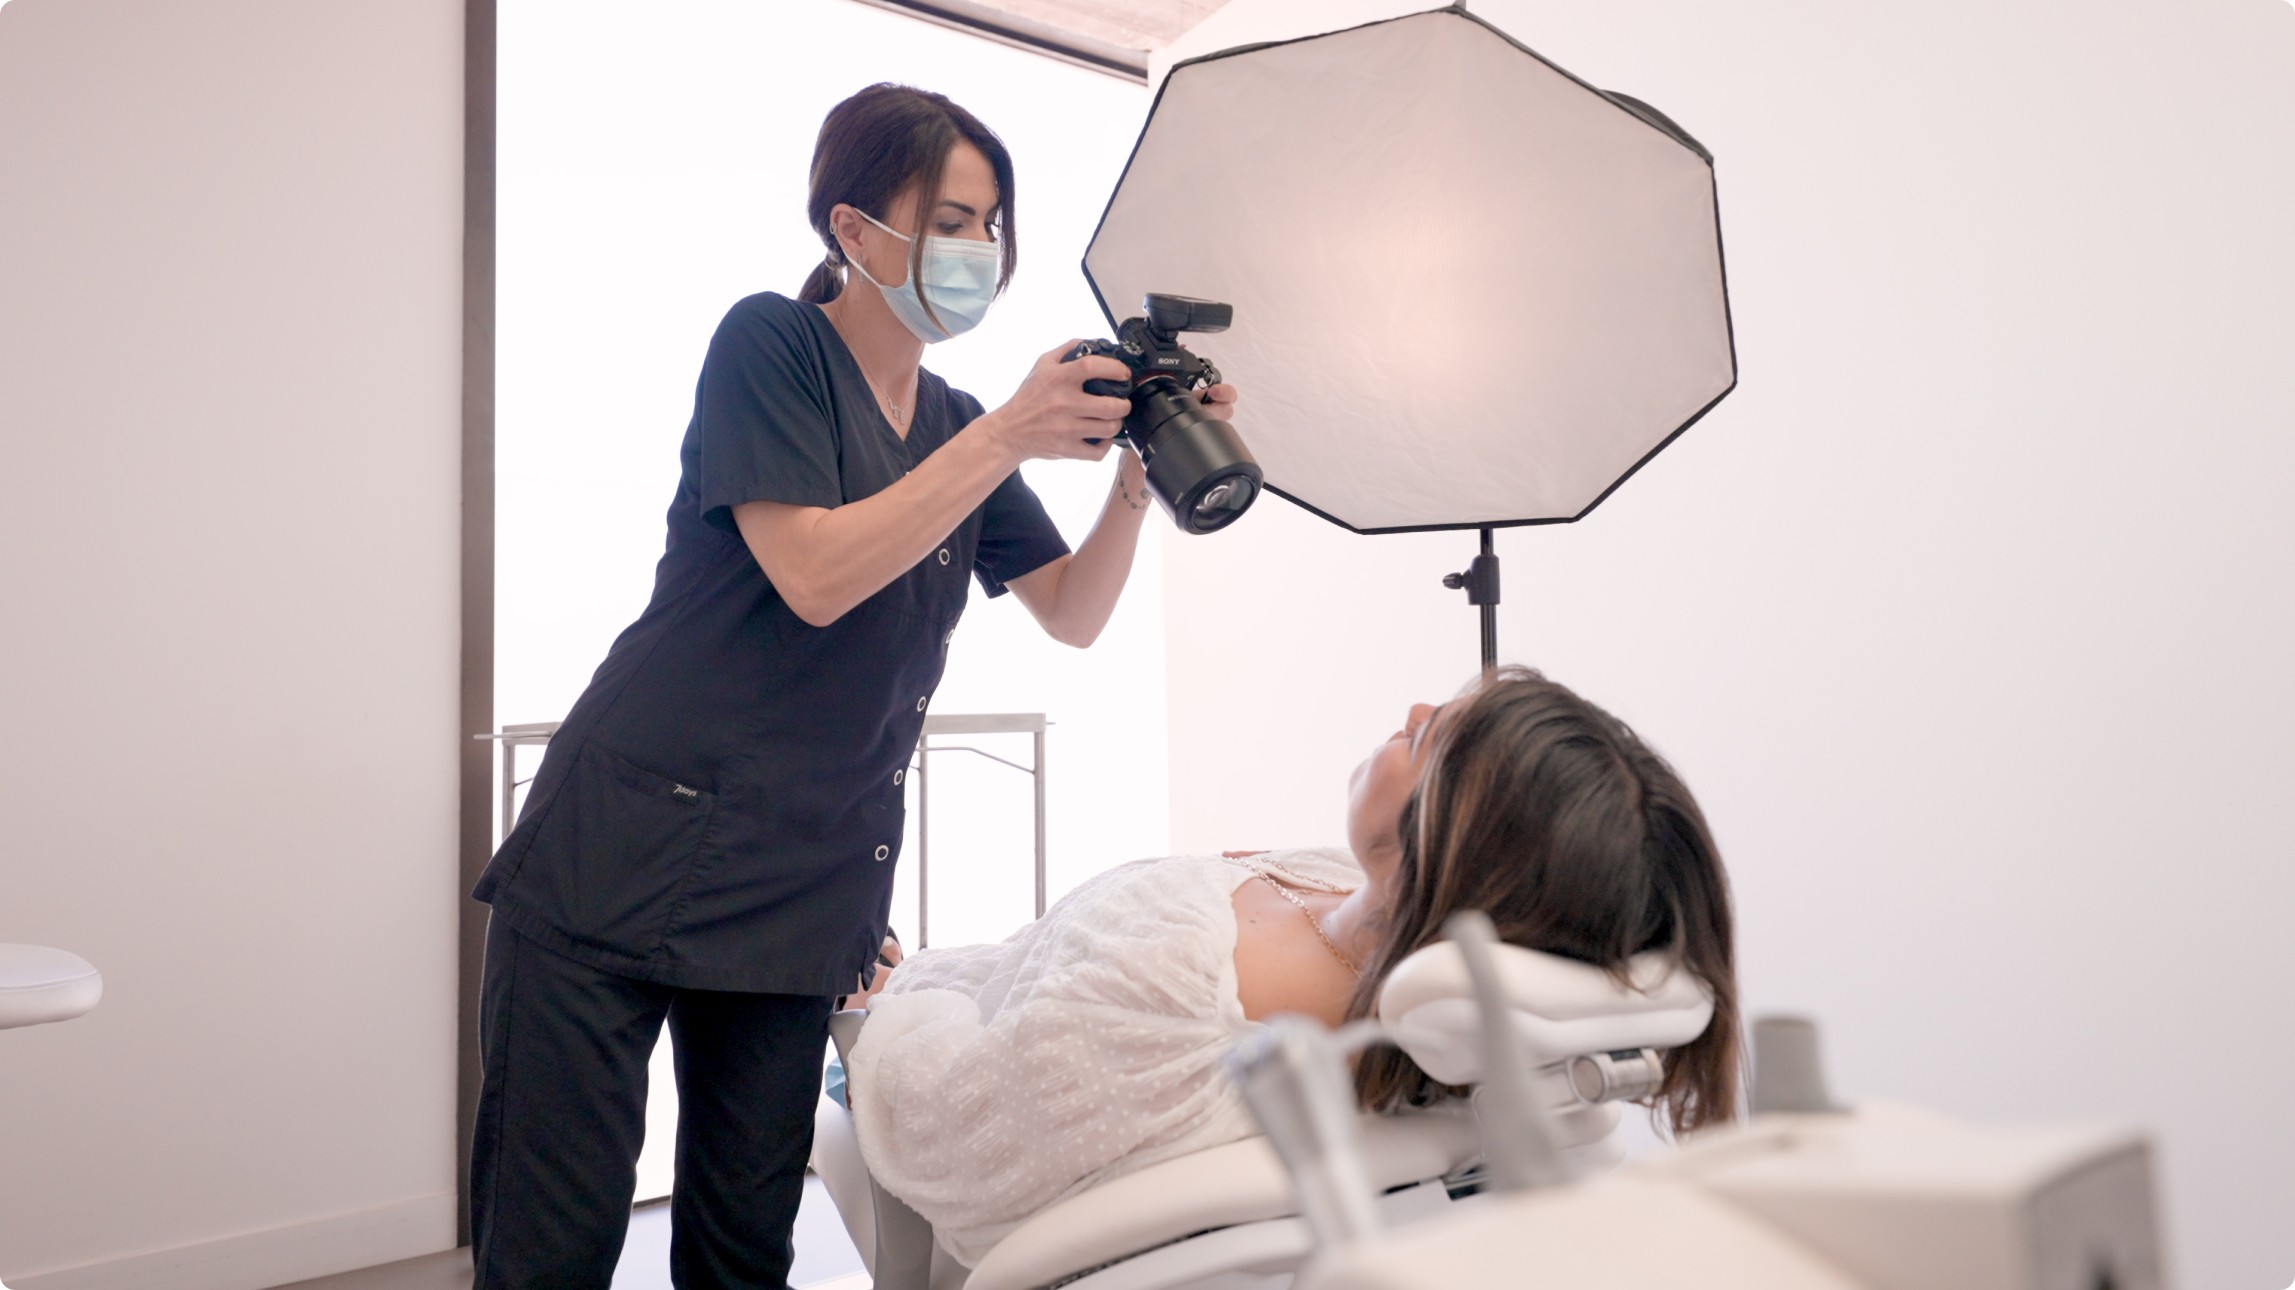 La photographie numérique et l'art dentaire : quid du patient ? - AOnews le  magazine dentaire qui nous rassemble